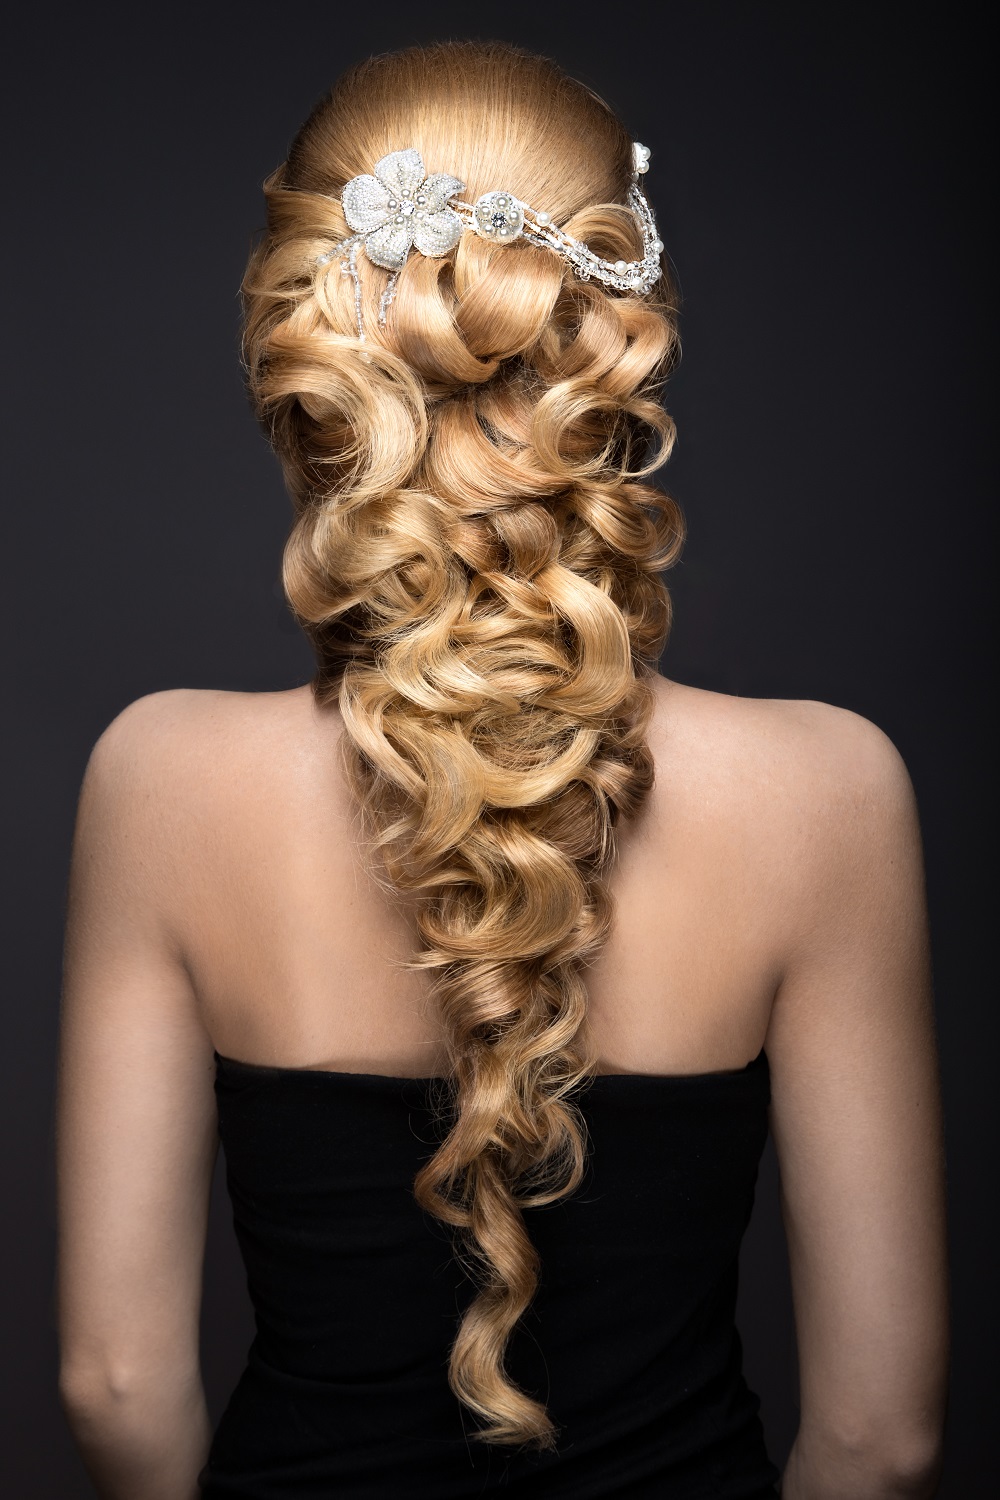 Długi blond warkocz jako przykład fryzury na wesele.